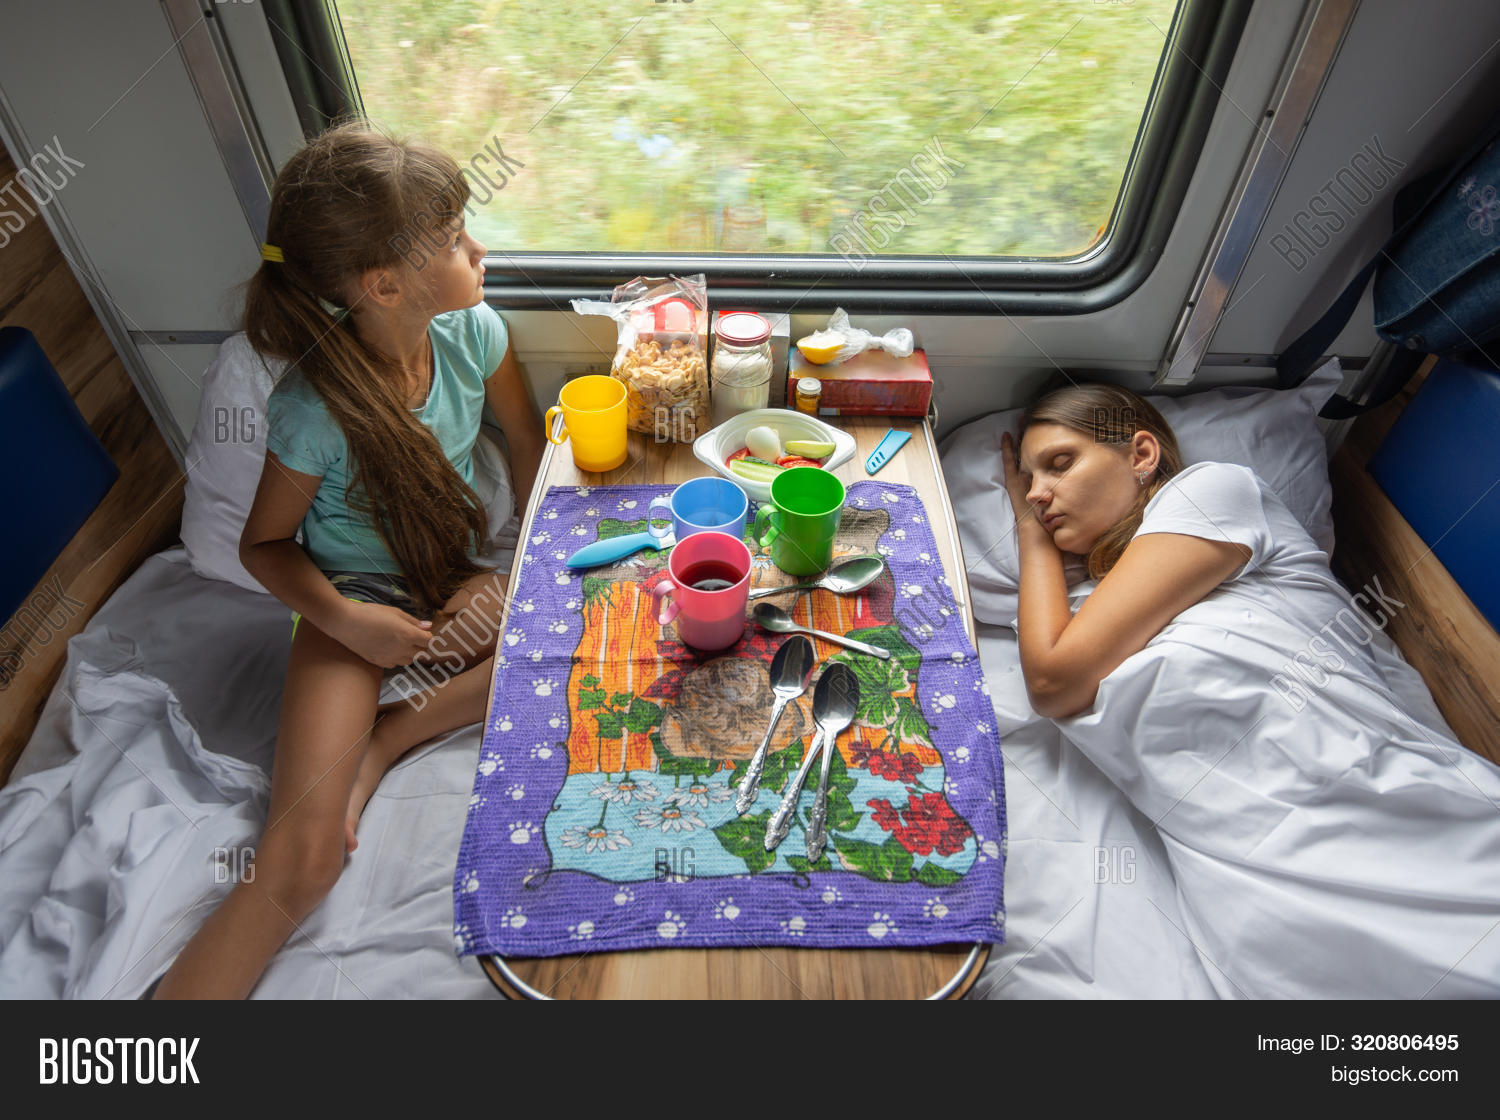 12 поезда мама. Поезда для детей. Мама с ребенком в поезде. Дети спят в поезде. Поездка на поезде с детьми.